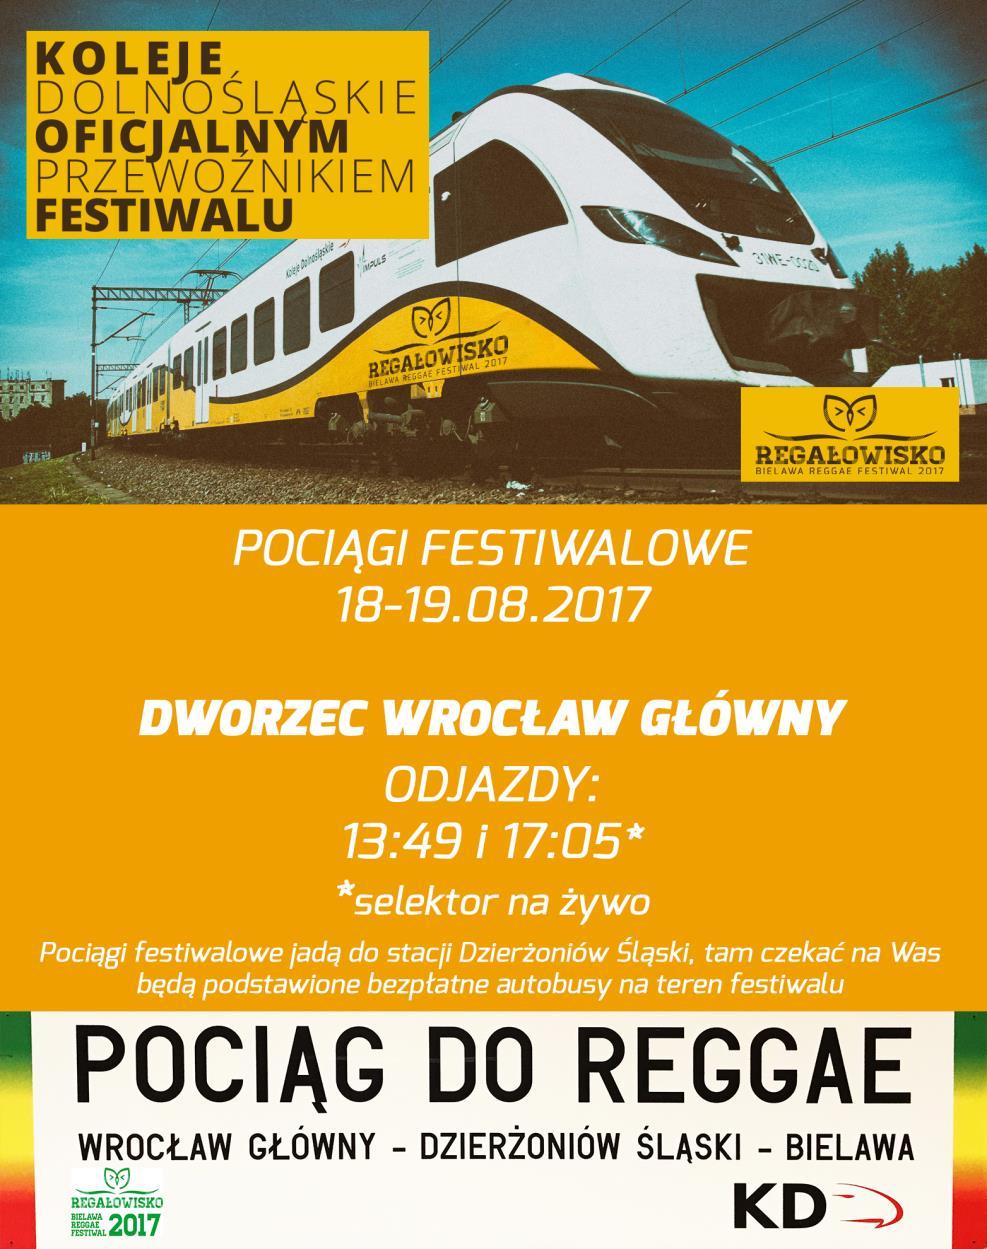 Dojazd Z Wrocławia do Bielawy kursują autobusy PKS, rozkład jazdy i cennik można sprawdzić na oficjalnej stronie przewoźnika.